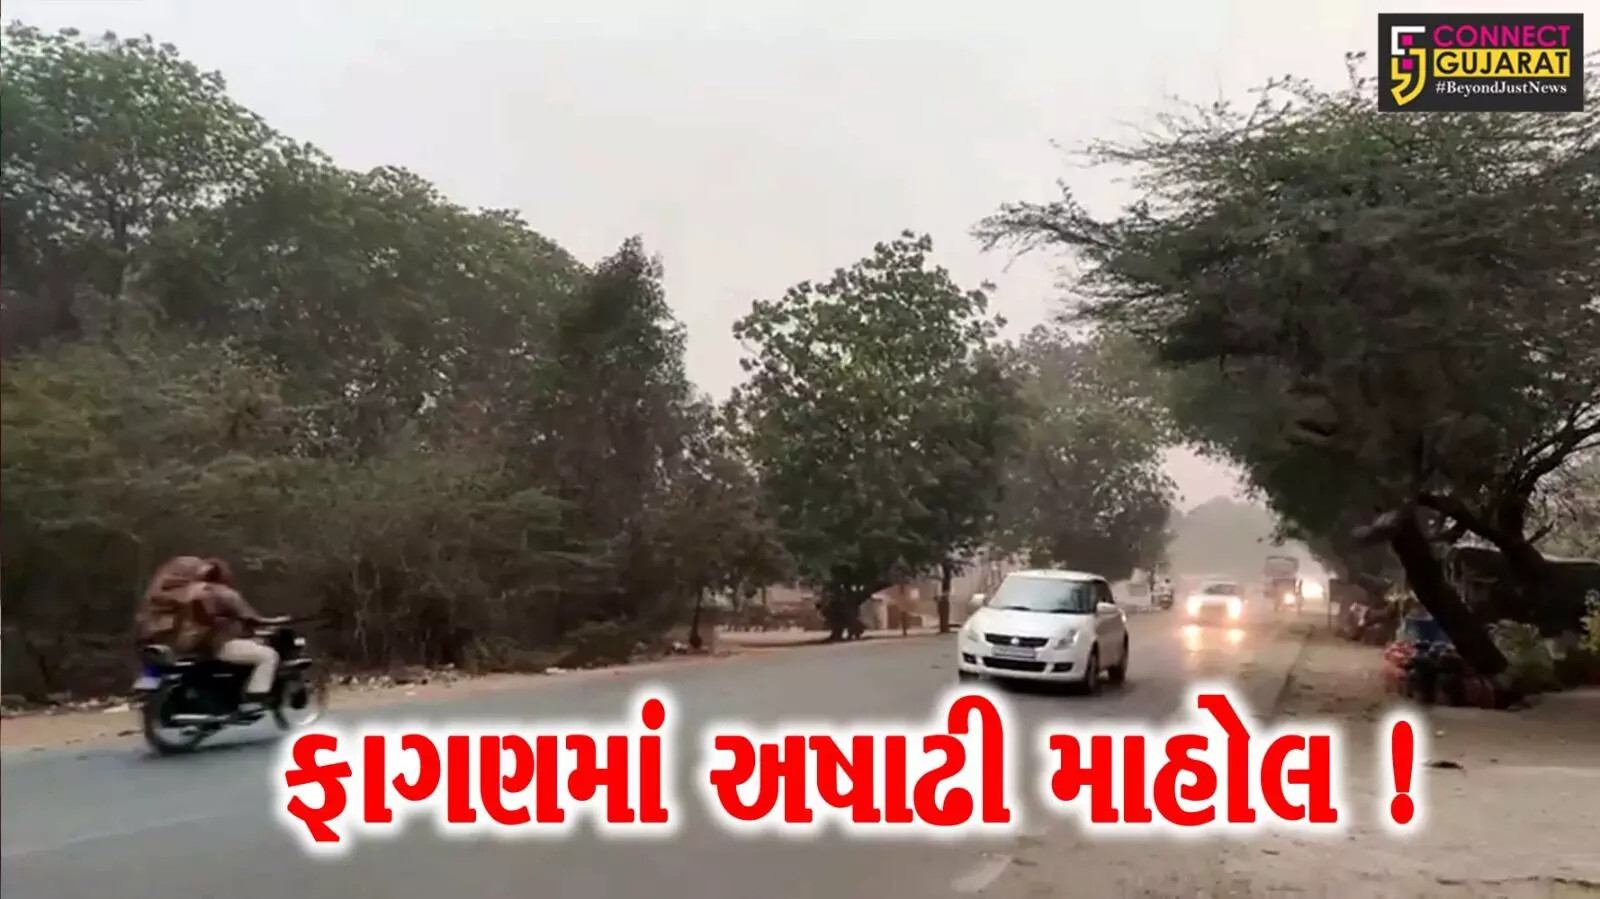 દક્ષિણ ગુજરાતનાં વાતાવરણમાં અચાનક પલટો, મિનિ વાવાઝોડુ ફૂંકાતા ધૂળની ડમરી ઊડી